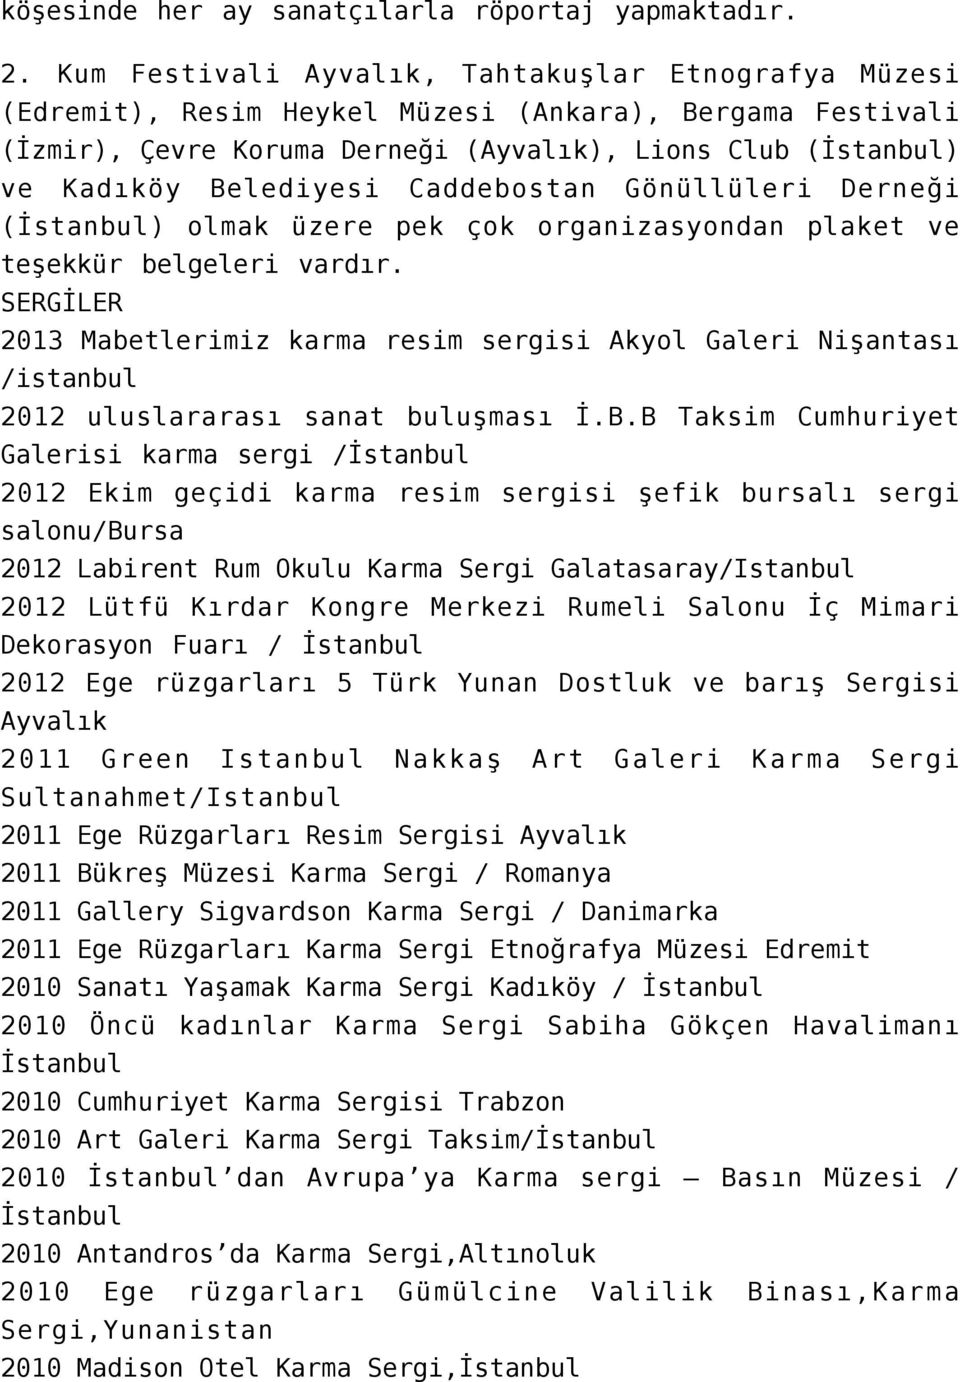 Caddebostan Gönüllüleri Derneği (İstanbul) olmak üzere pek çok organizasyondan plaket ve teşekkür belgeleri vardır.